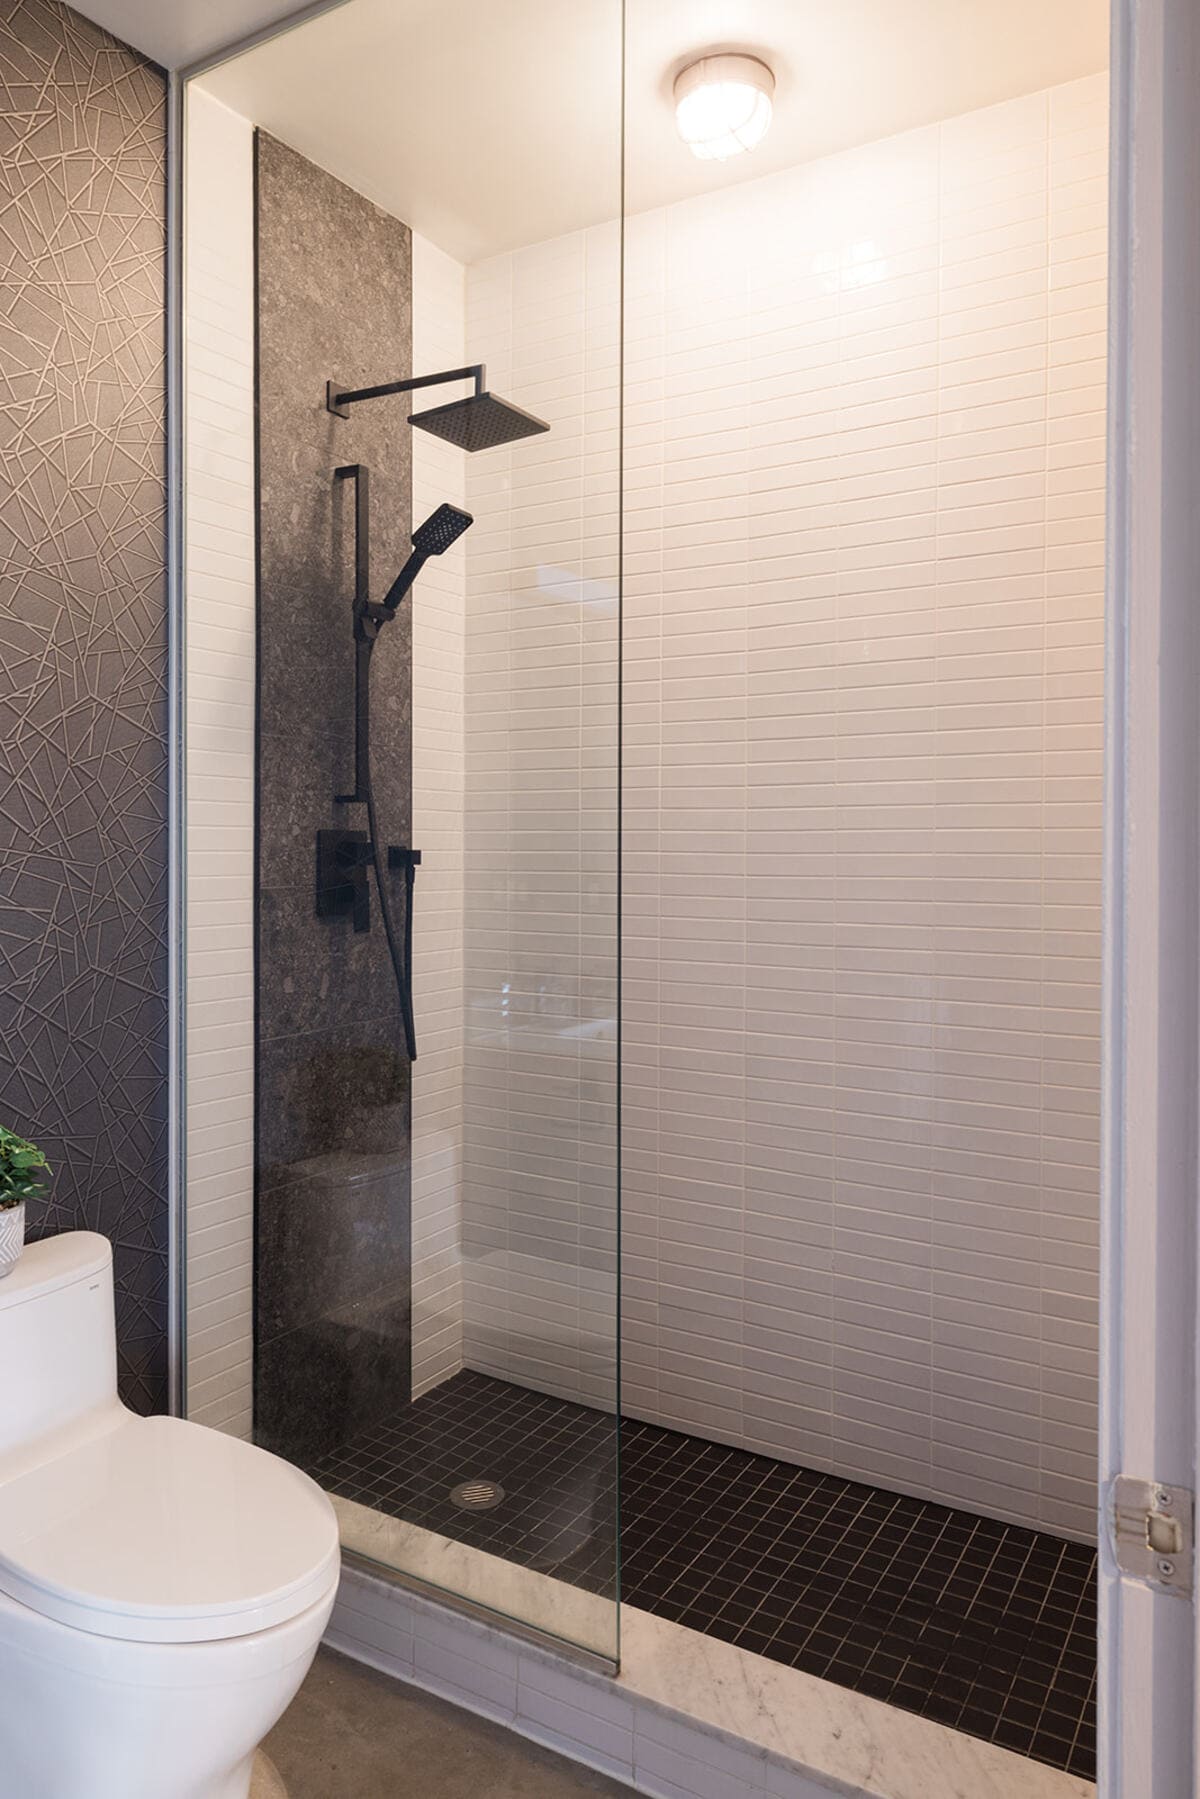 Walk-in shower in luxury condo bathroom renovation by Golden Bee Condos 